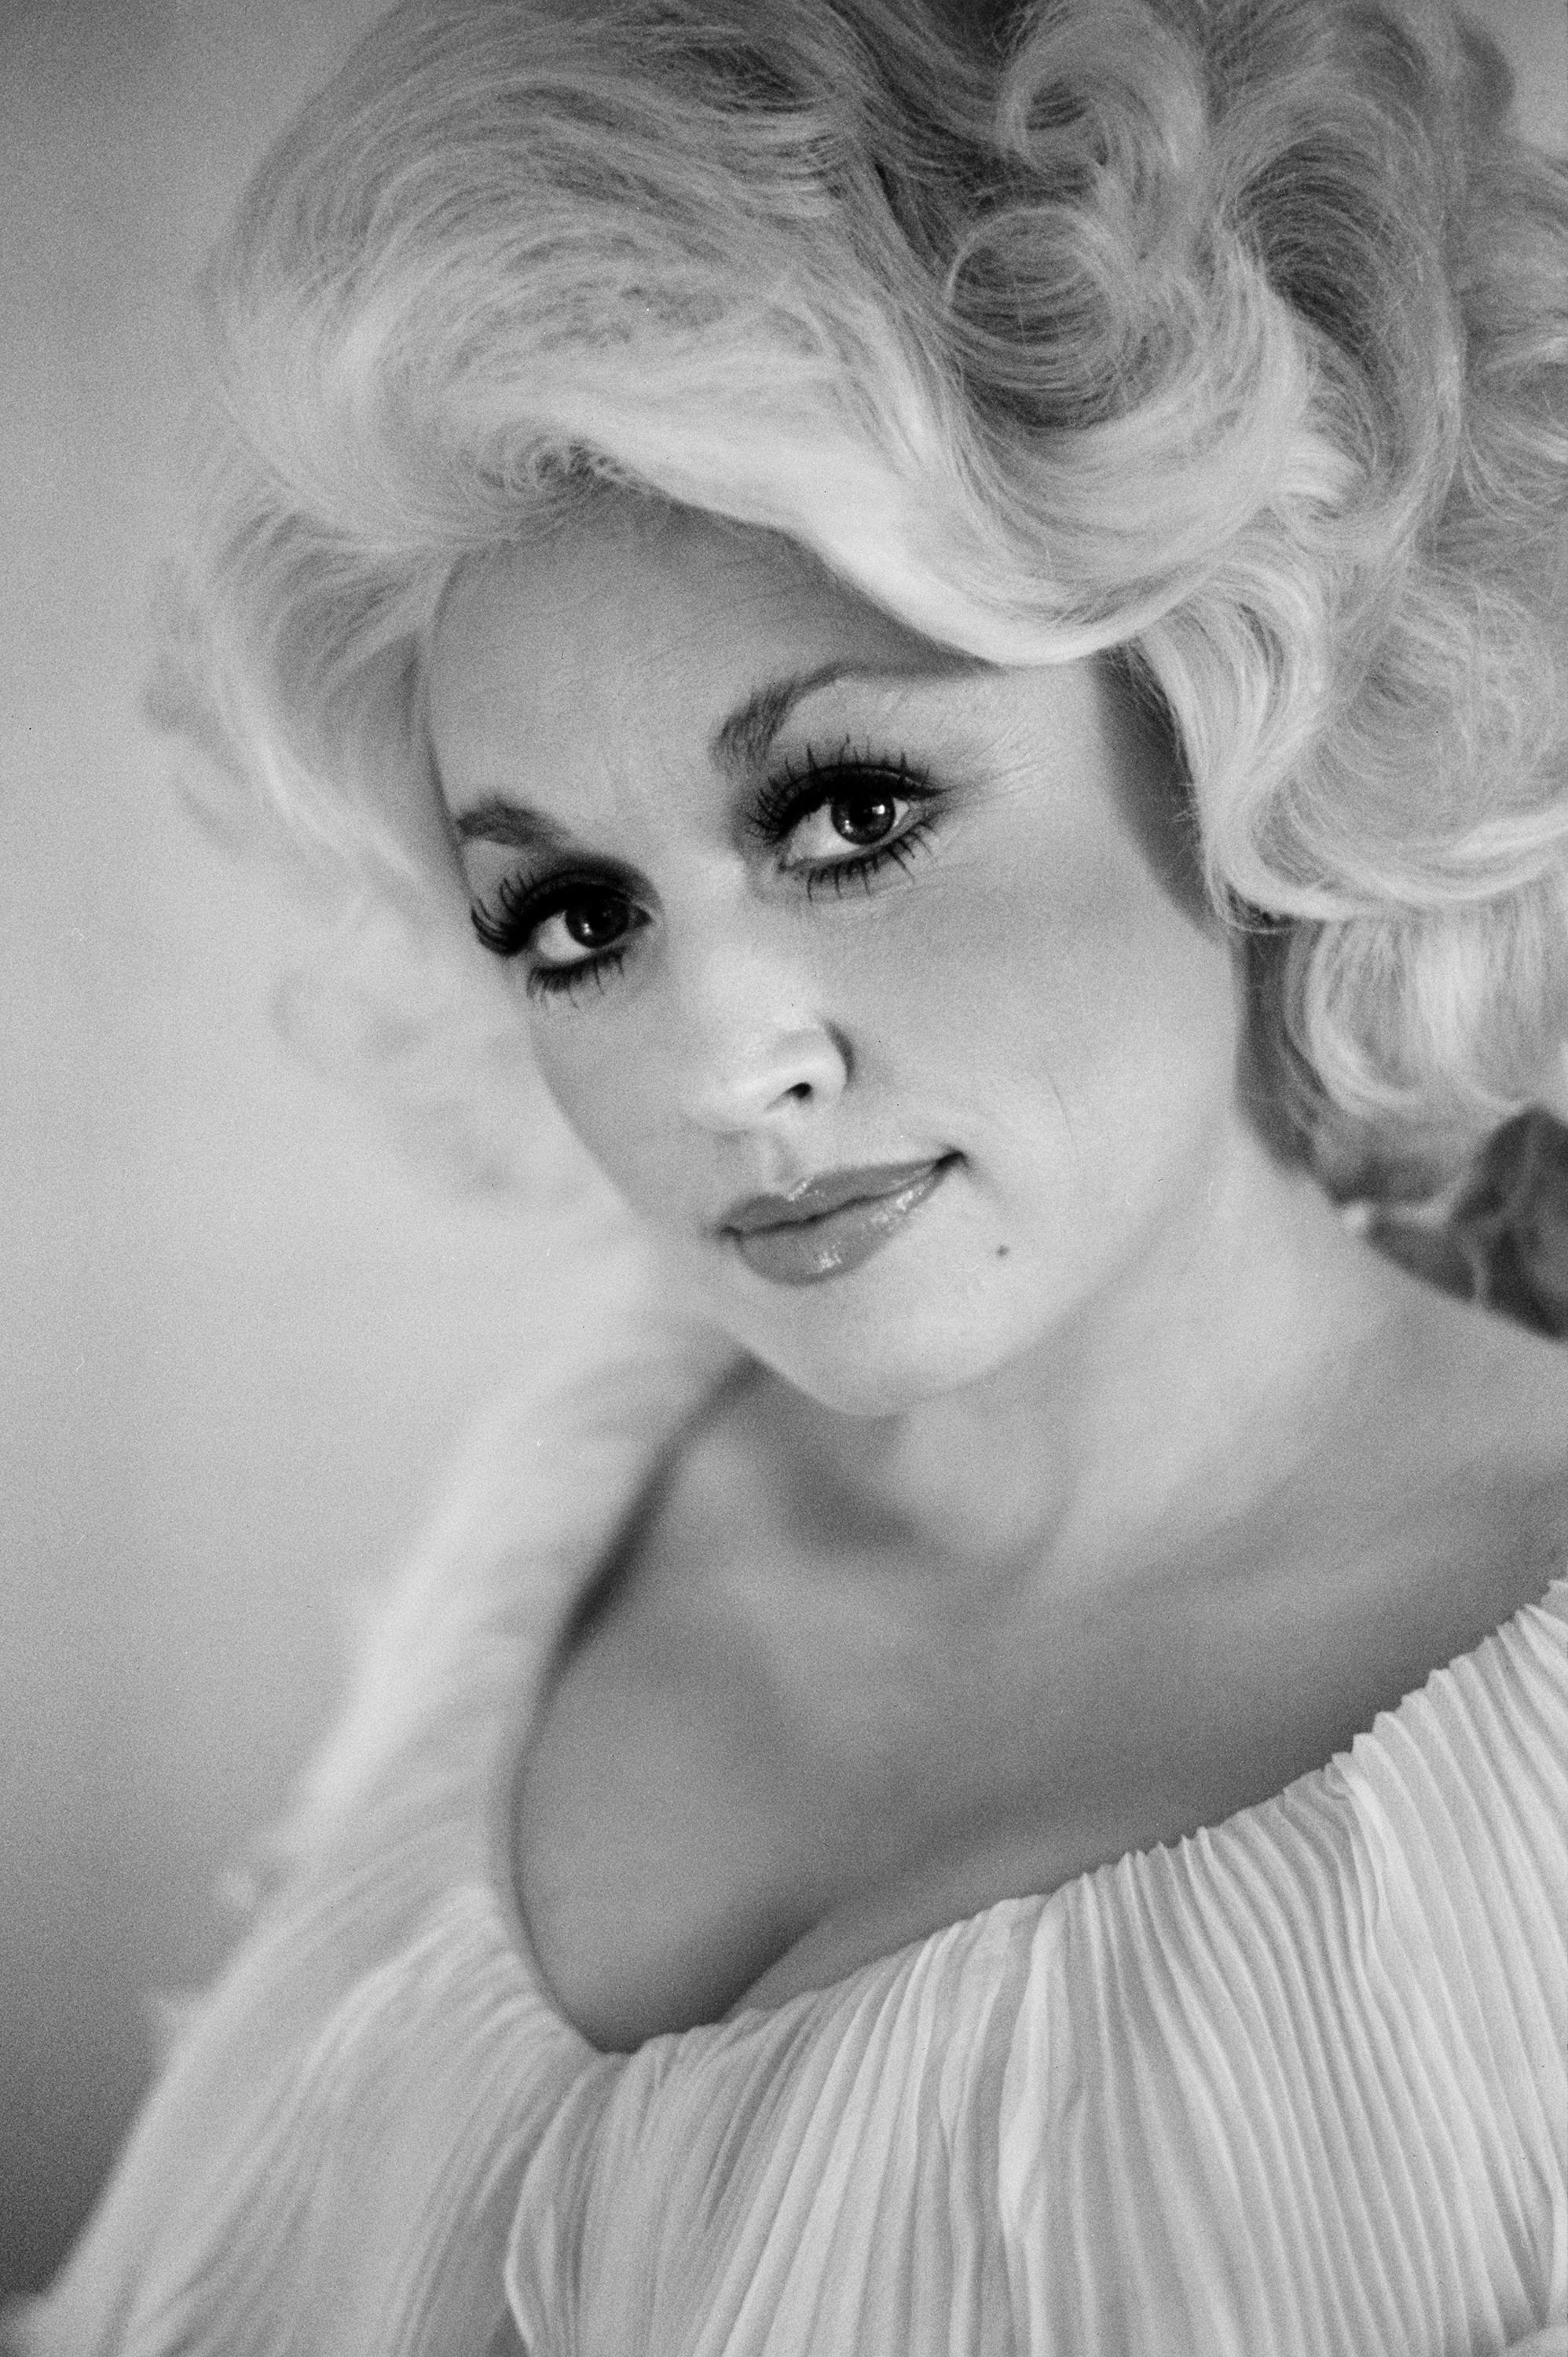 Black and White Photograph Ed Caraeff - Dolly Parton